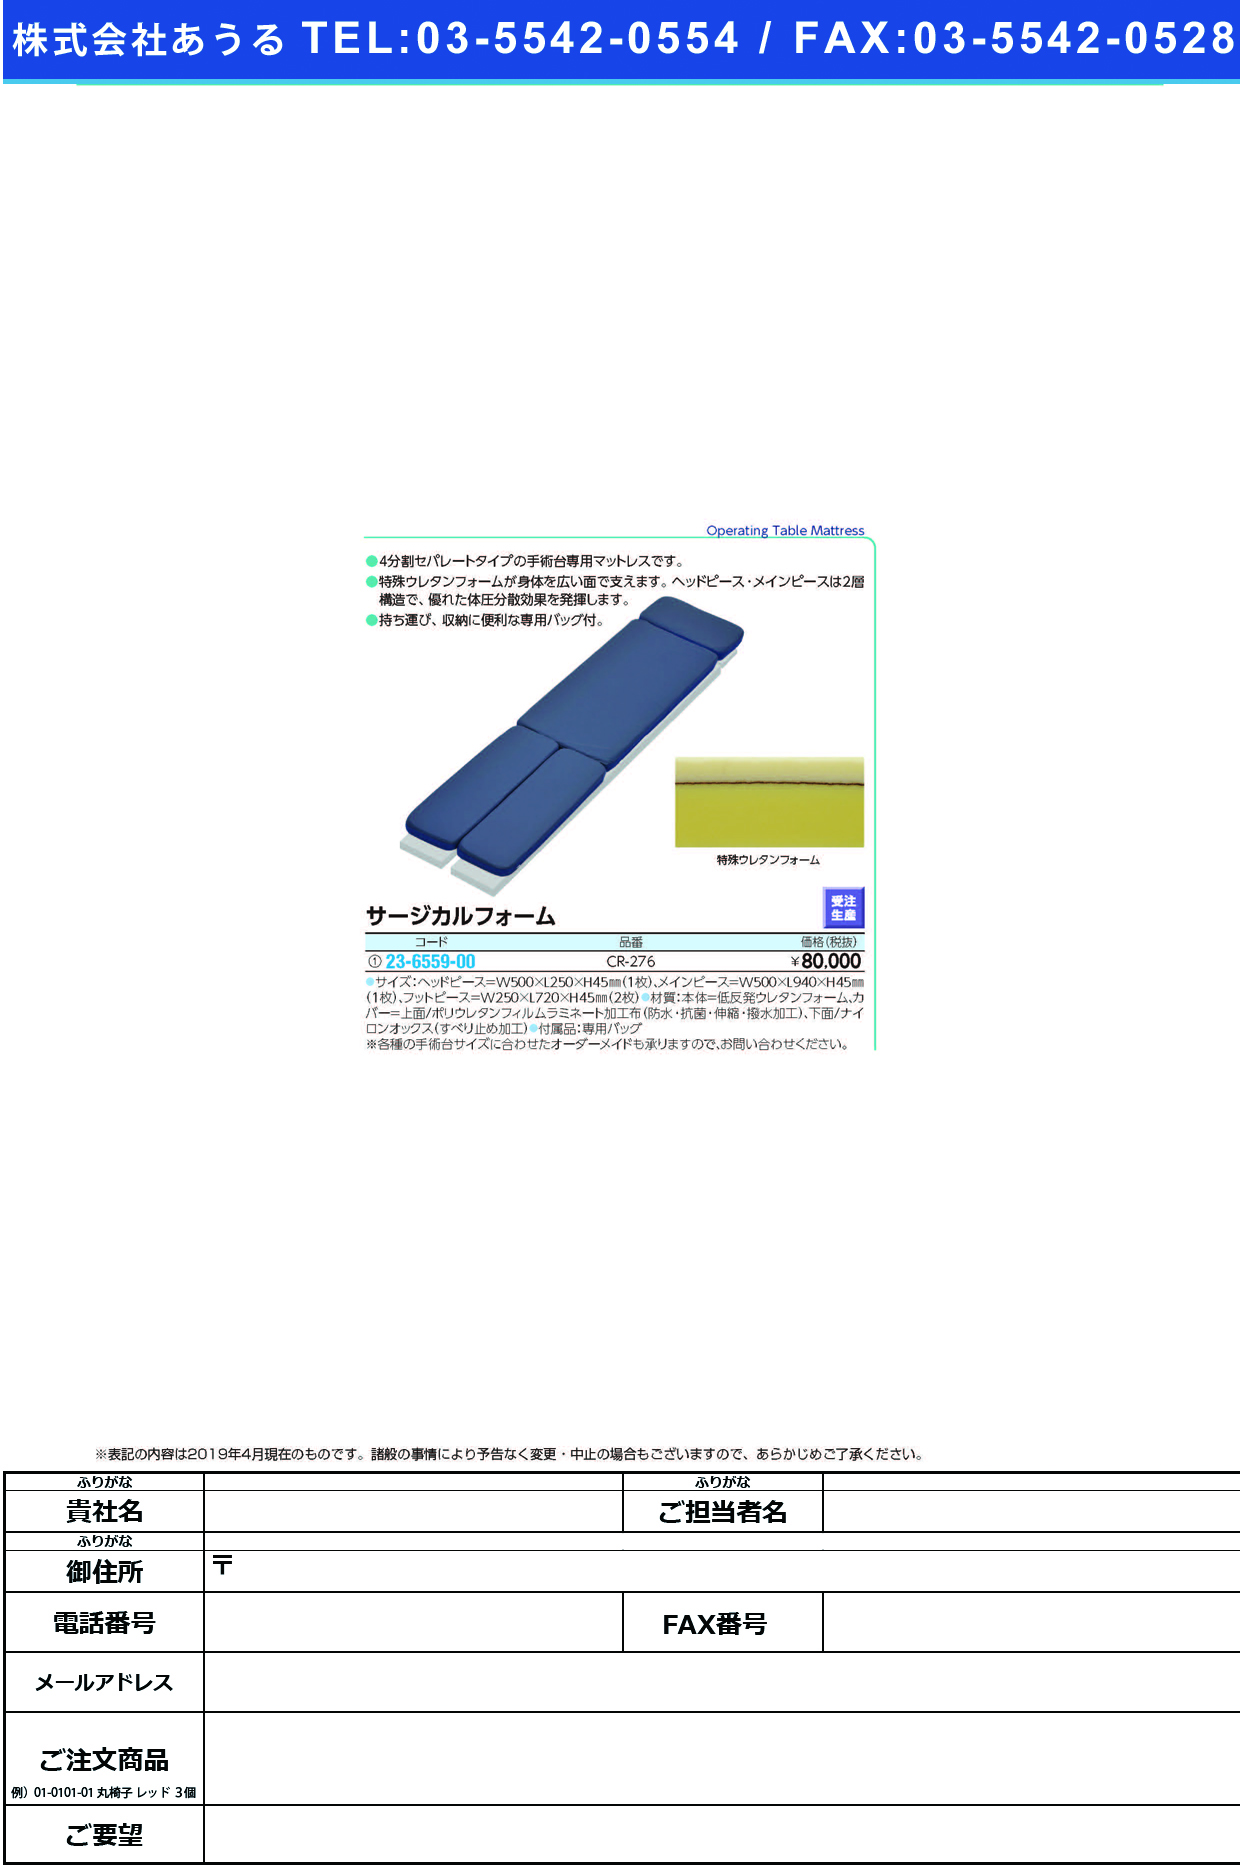 (23-6559-00)サージカルフォーム CR-276(ｾﾝﾖｳﾊﾞｯｸﾞﾂｷ) ｻｰｼﾞｶﾙﾌｫｰﾑ(ケープ)【1台単位】【2019年カタログ商品】